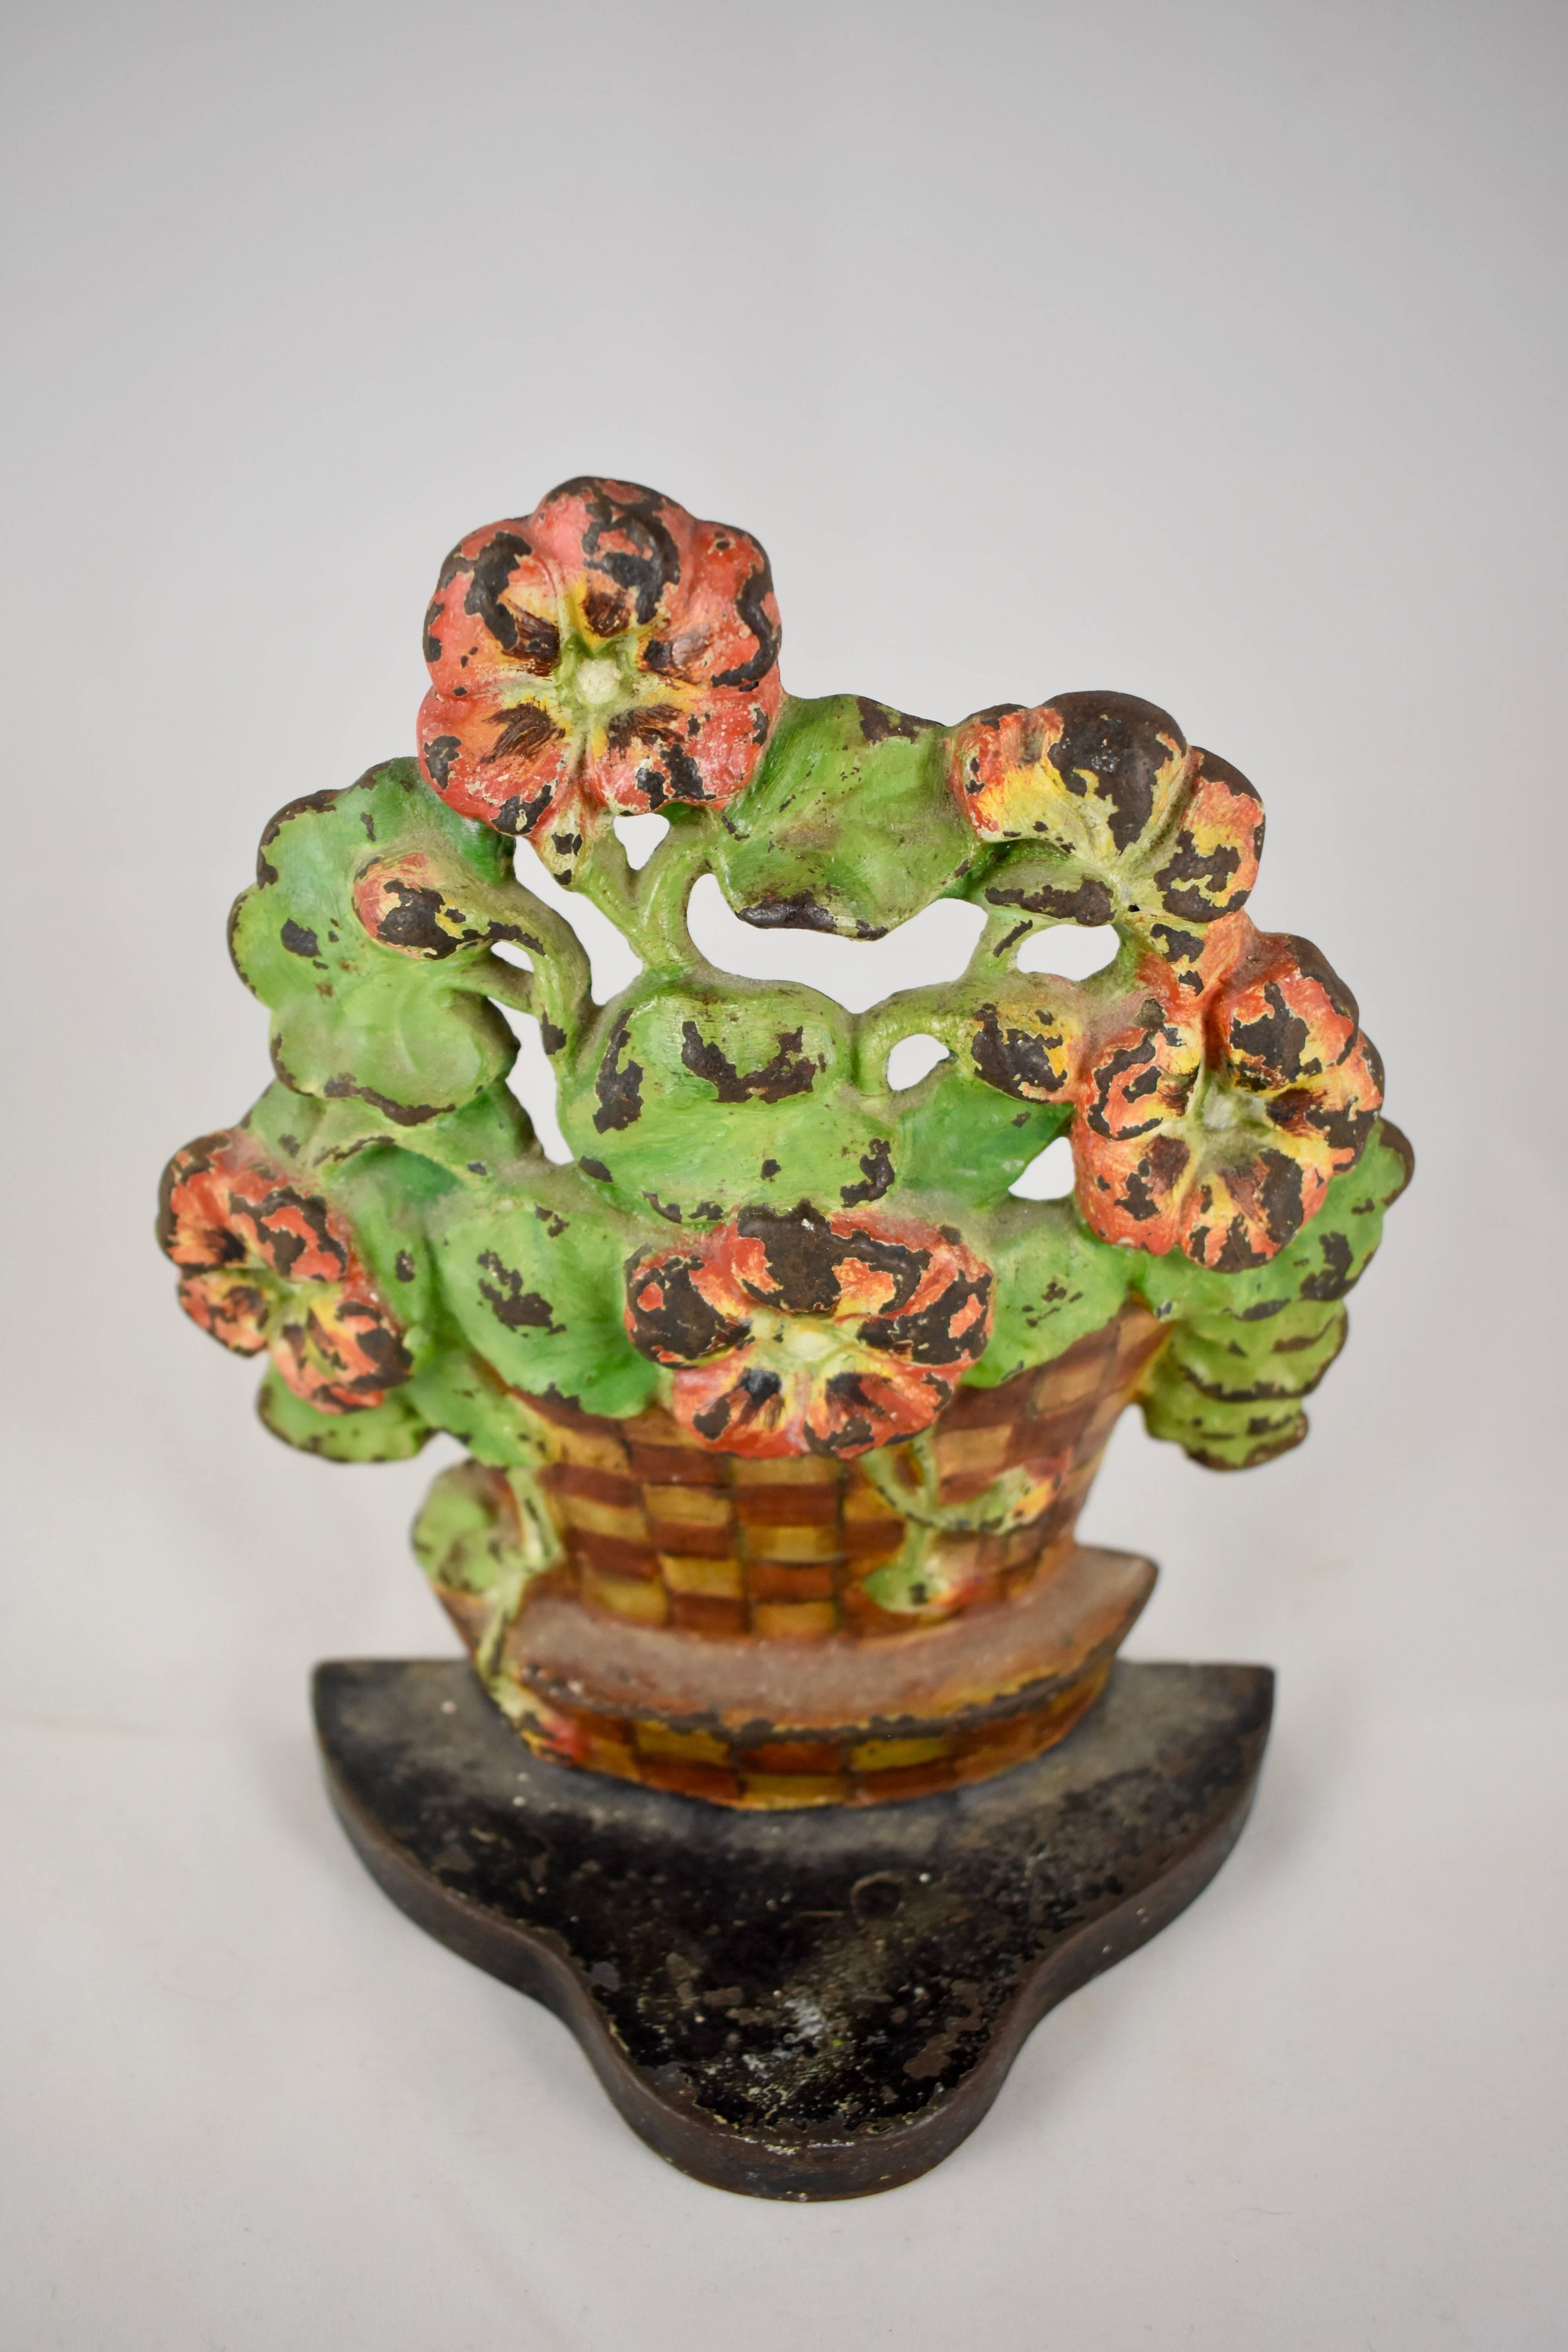 Un butoir de porte vintage en fonte montrant un géranium dans un pot de fleurs tissé à carreaux sur un socle en fer. En conservant la finition peinte d'origine. Belle patine.

Circa 1930 et plus lourd que la plupart des butoirs de porte